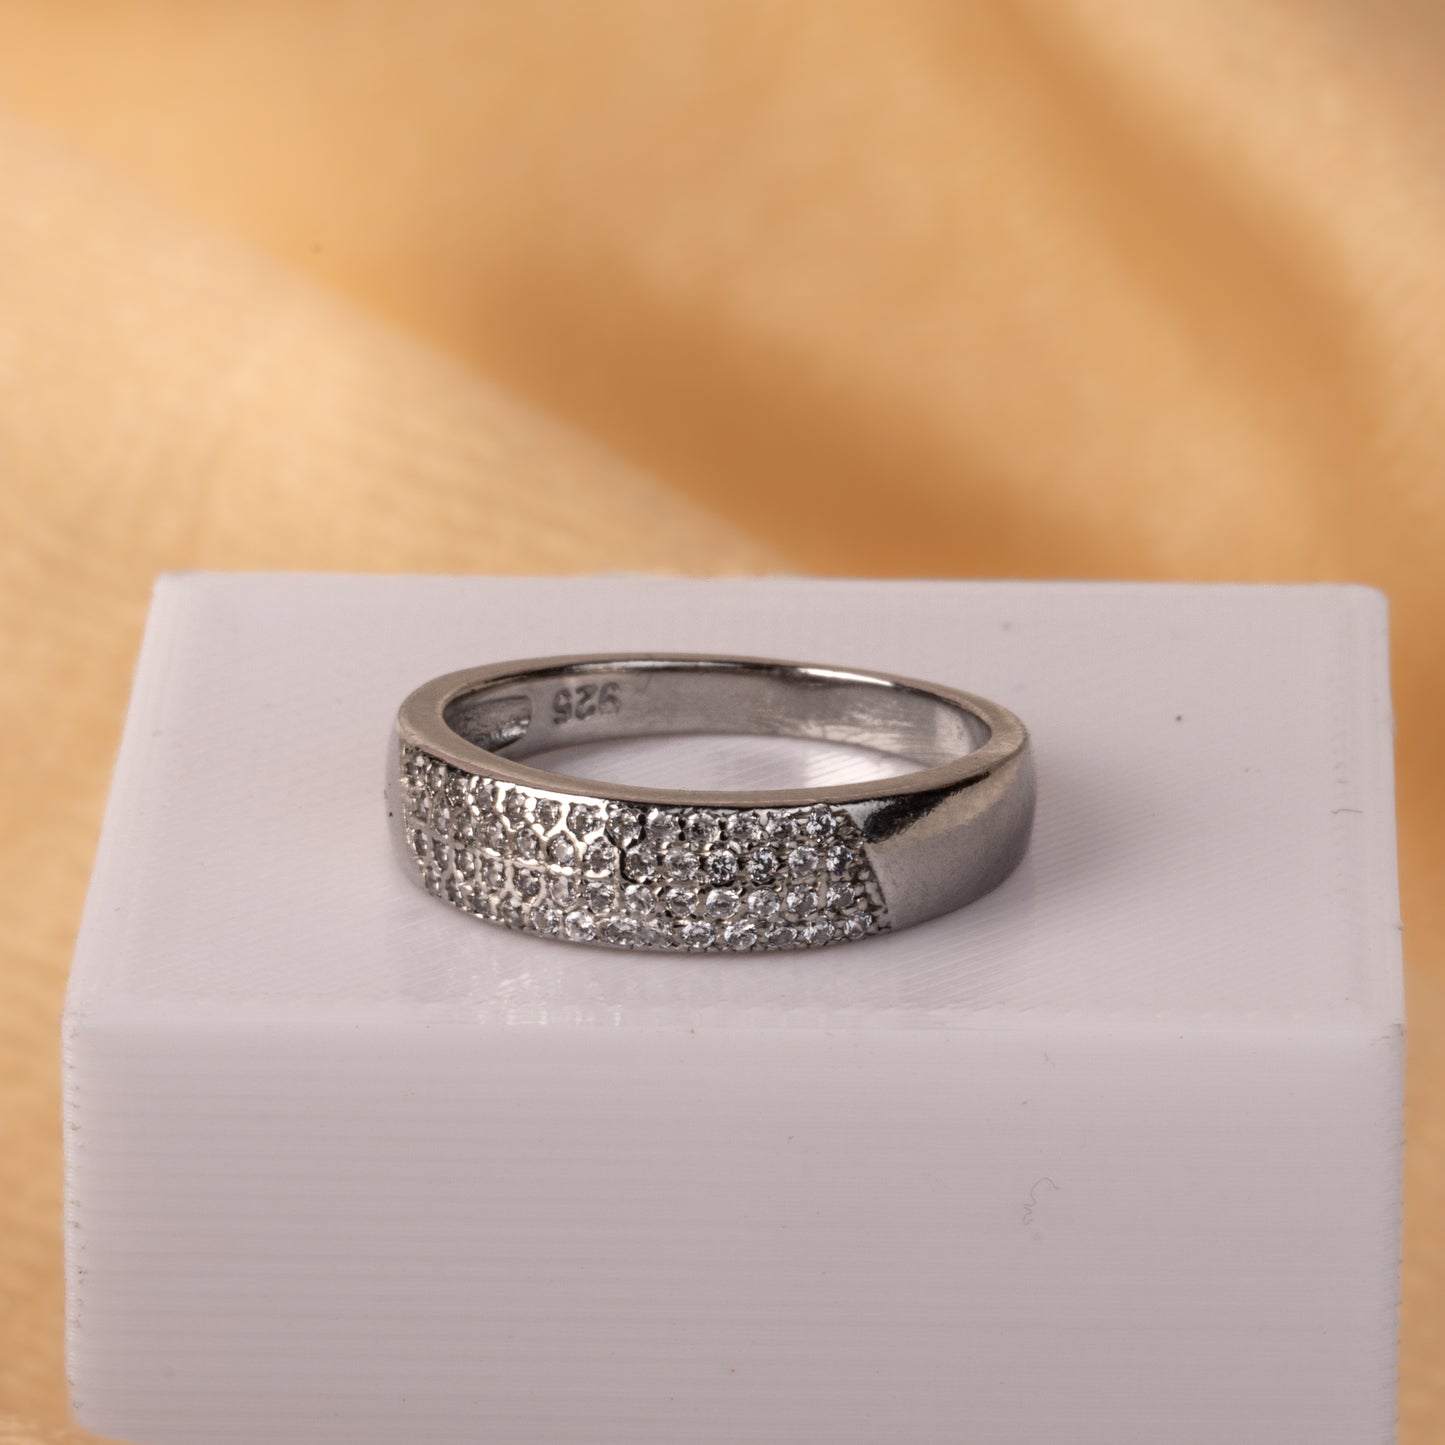 Silver Classic Gleam Ring